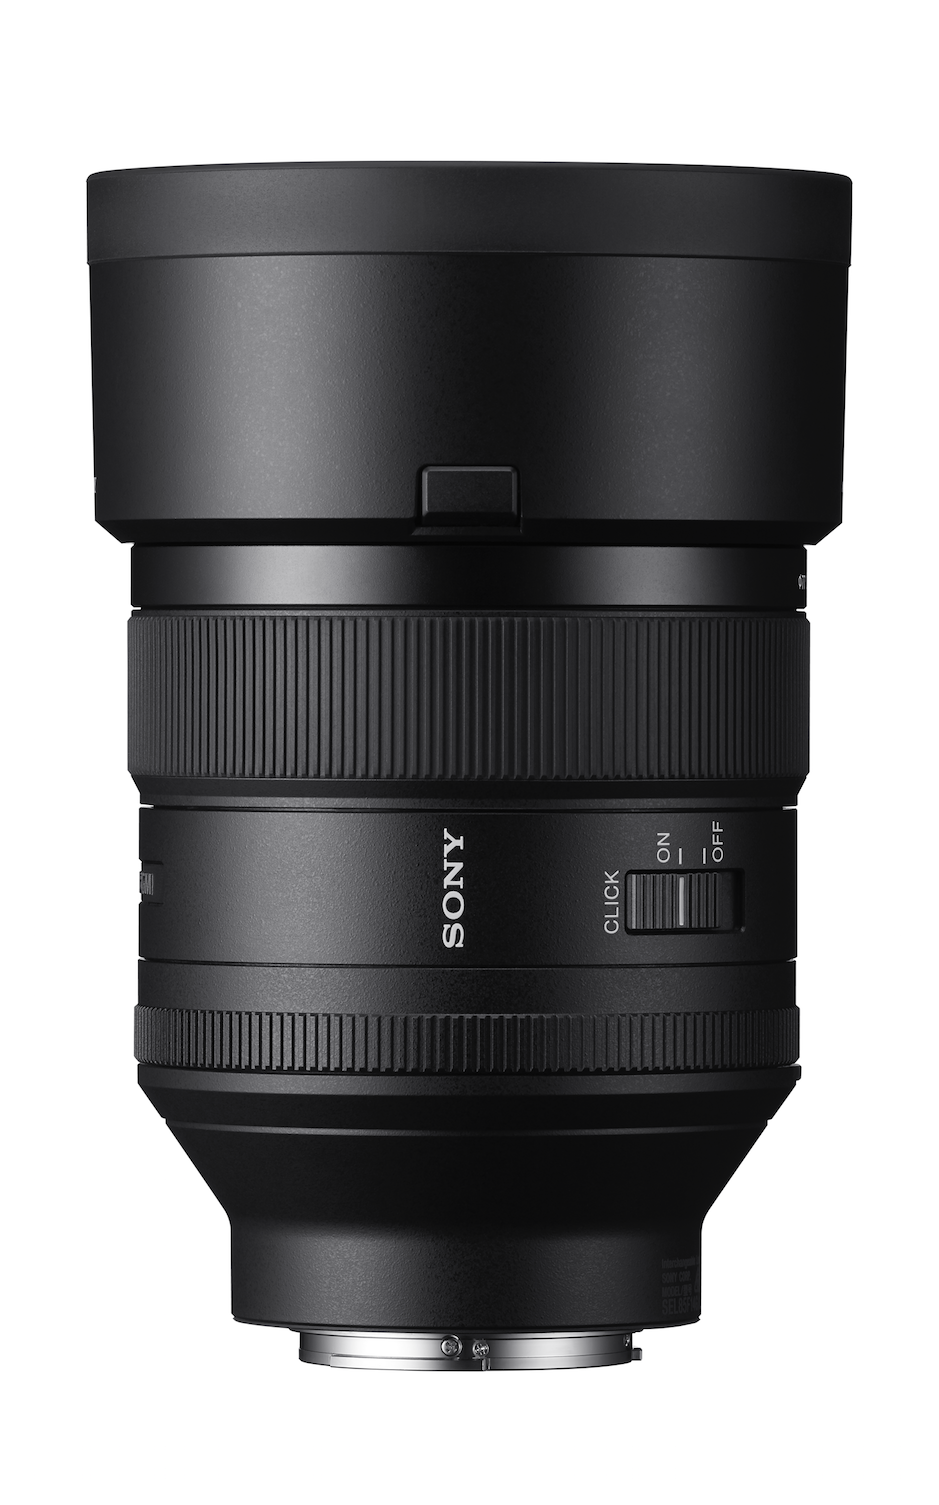 Sony FE 85mm f1.4 GM Lens, lenses mirrorless, Sony - Pictureline  - 3